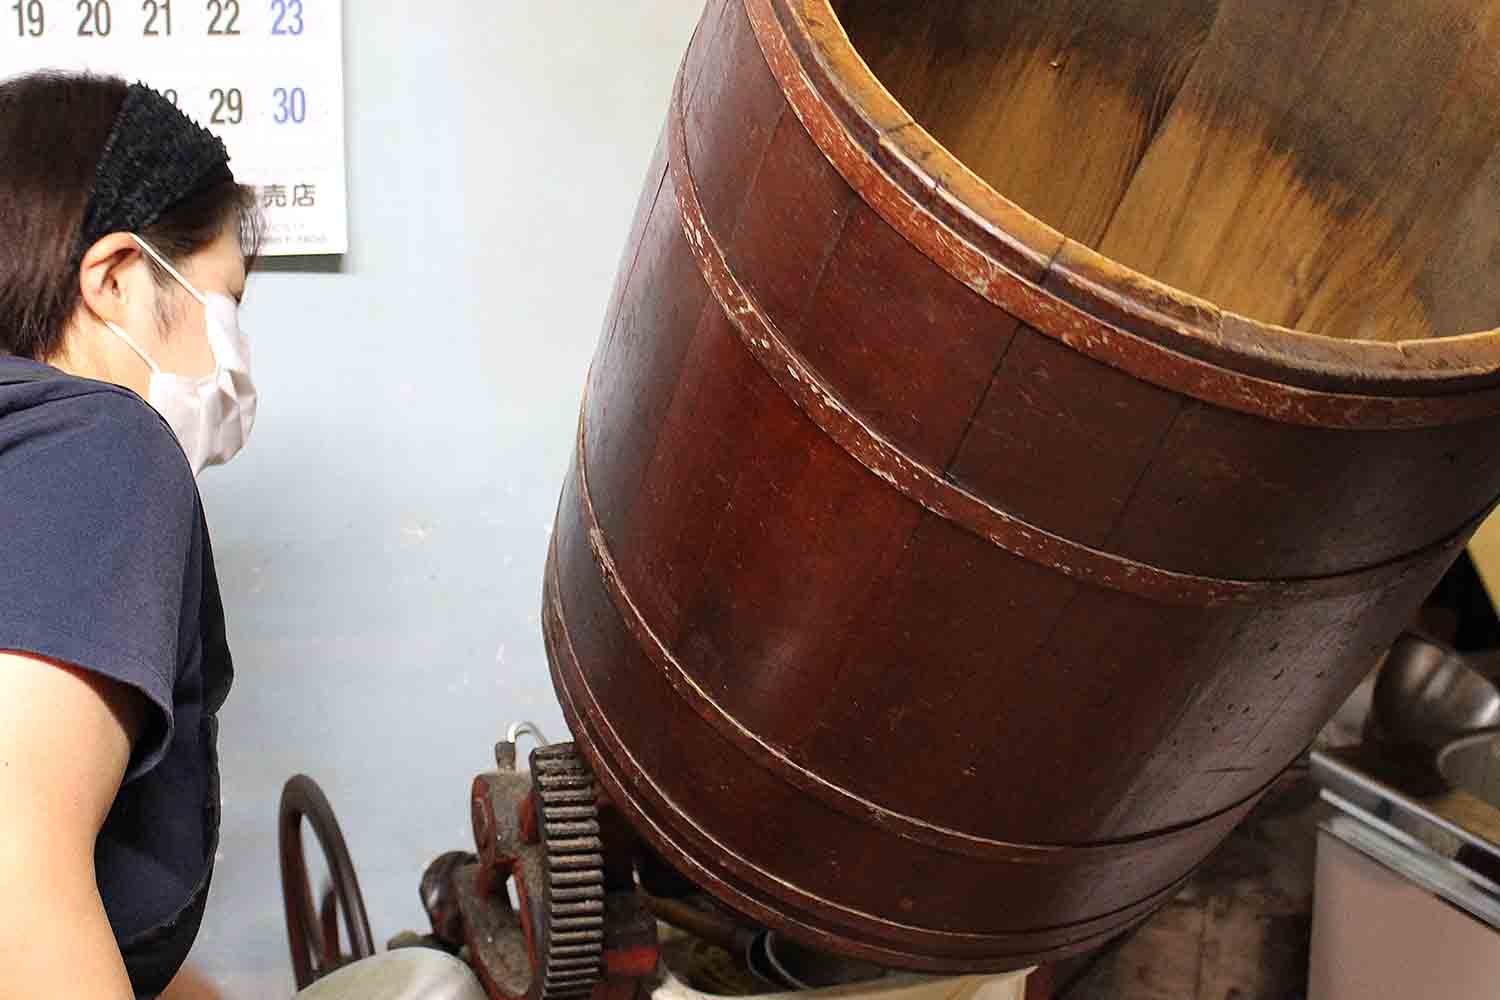 あられに醤油をまぶす樽は今では非常に珍しい木製だ。